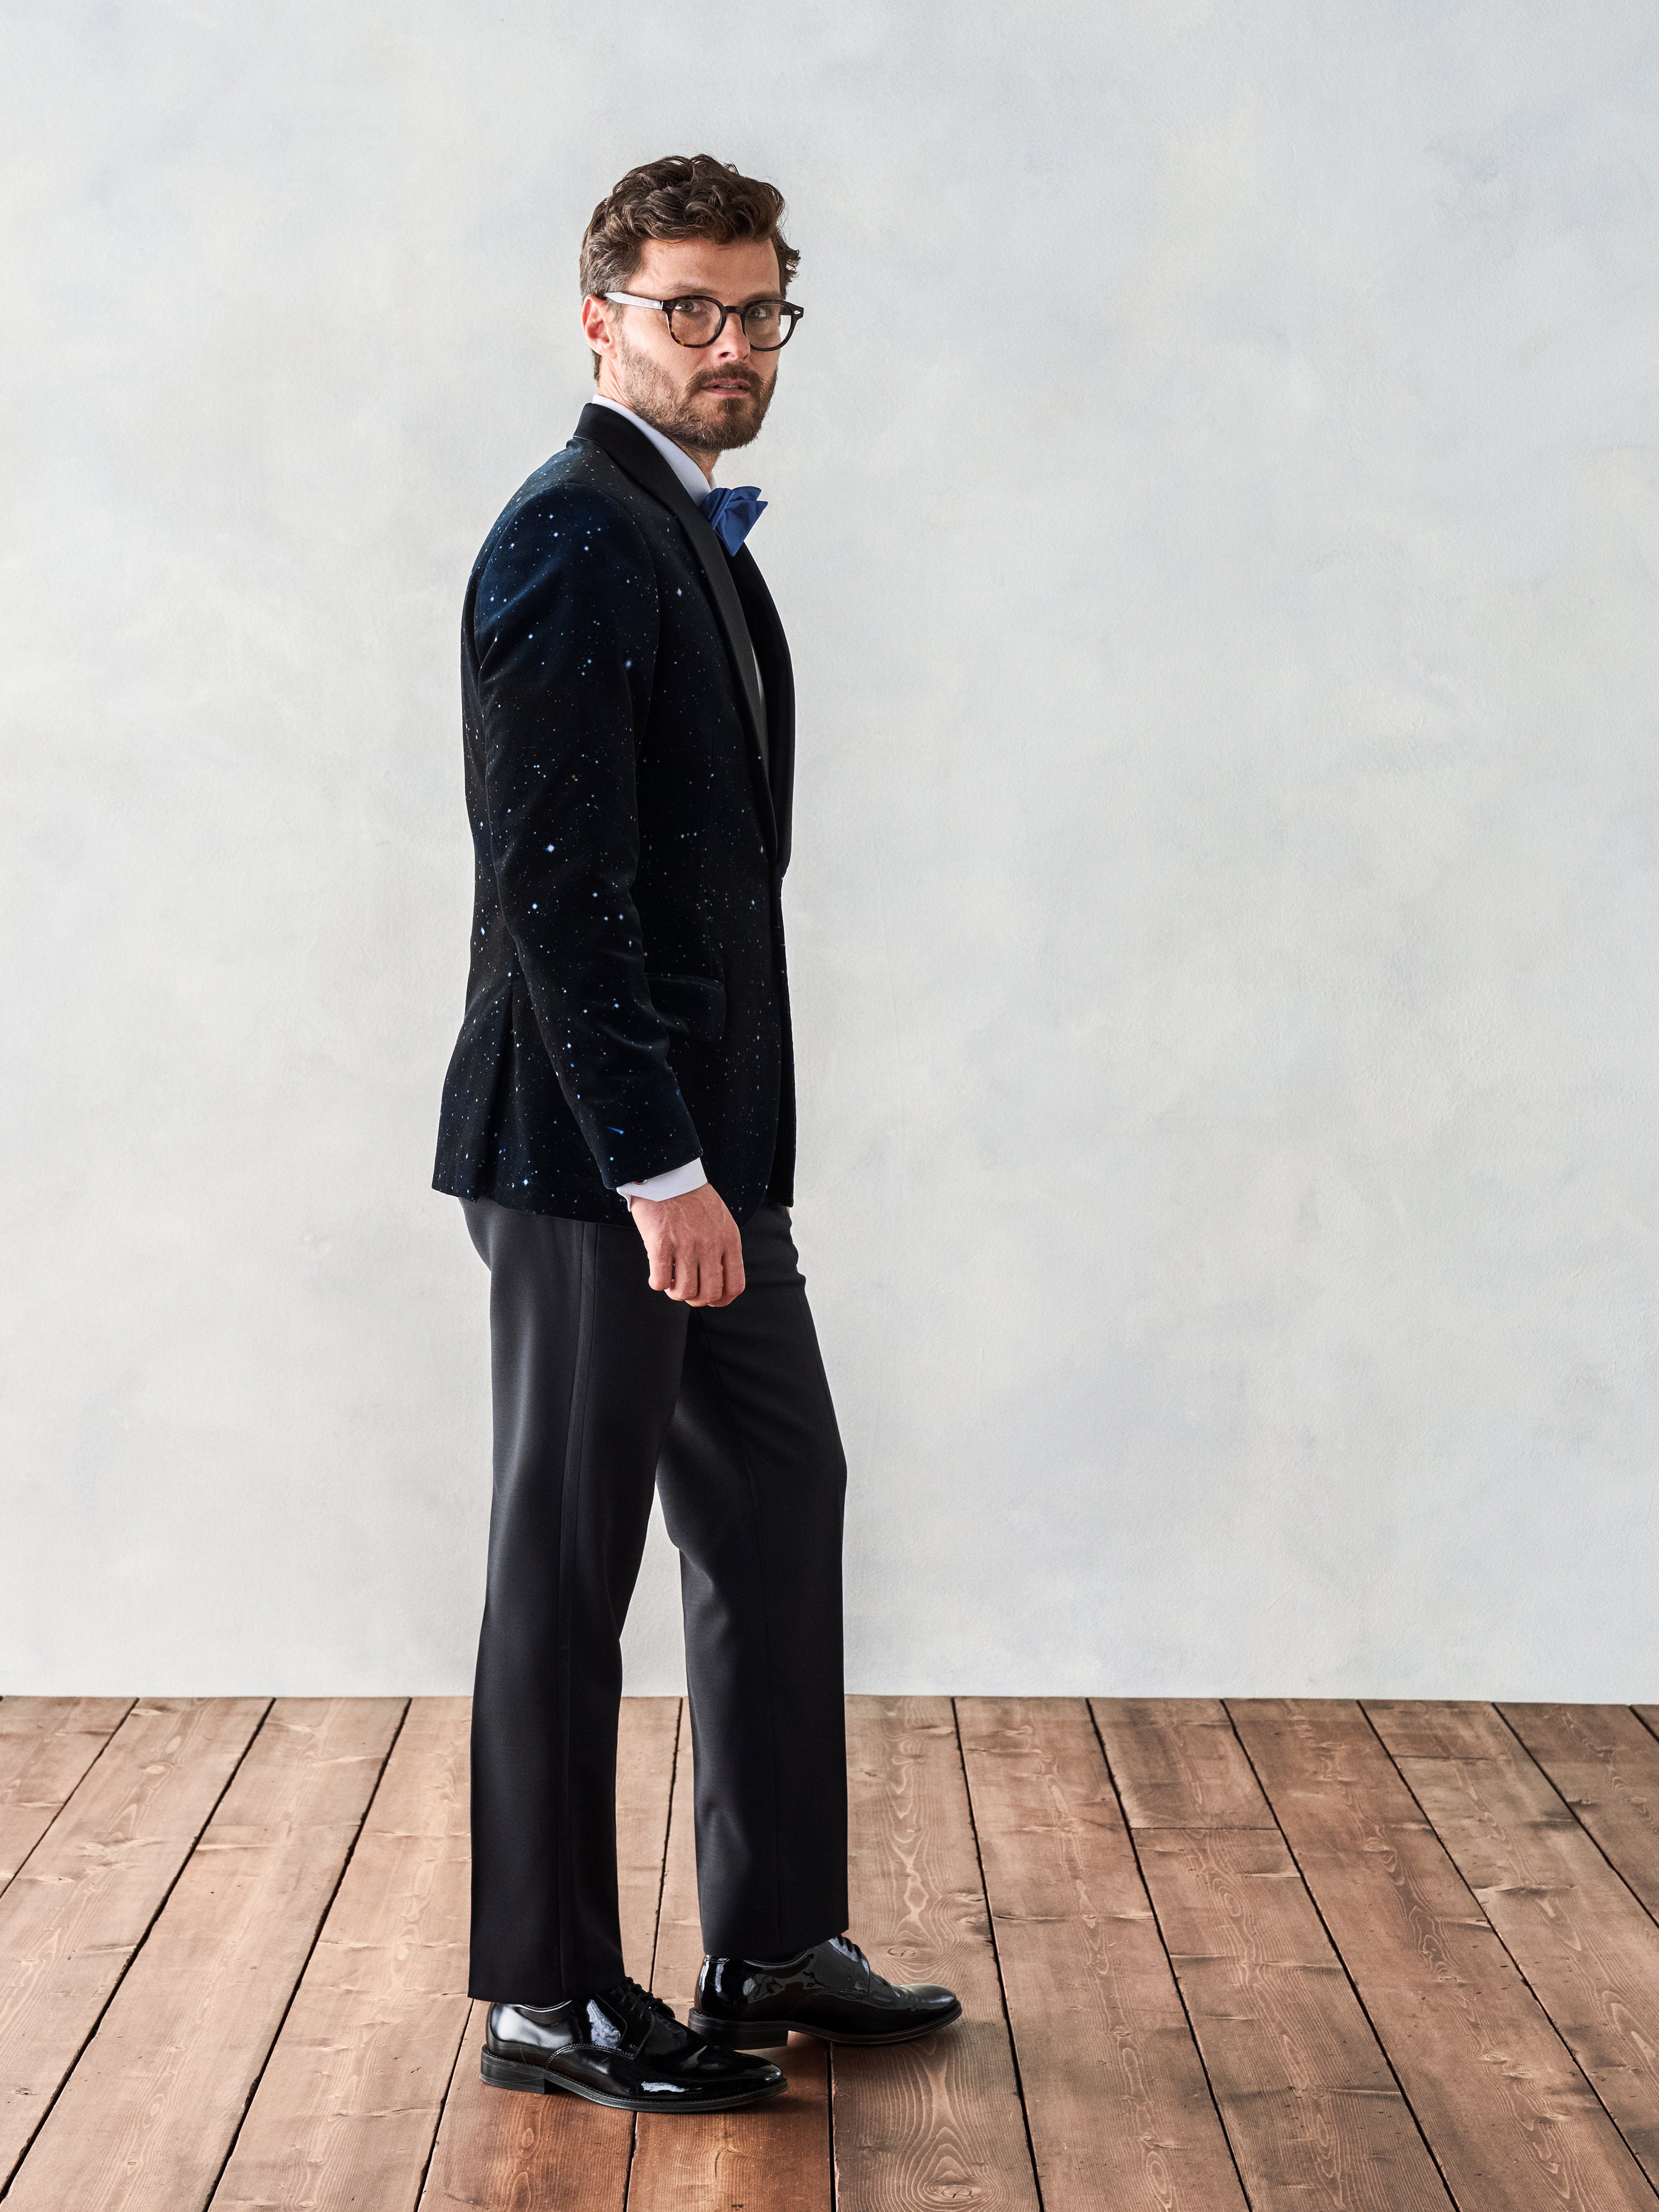 Men's Vest Black White Plaid Check Contrast Dress Formal Wedding Suit –  CHIRAGH